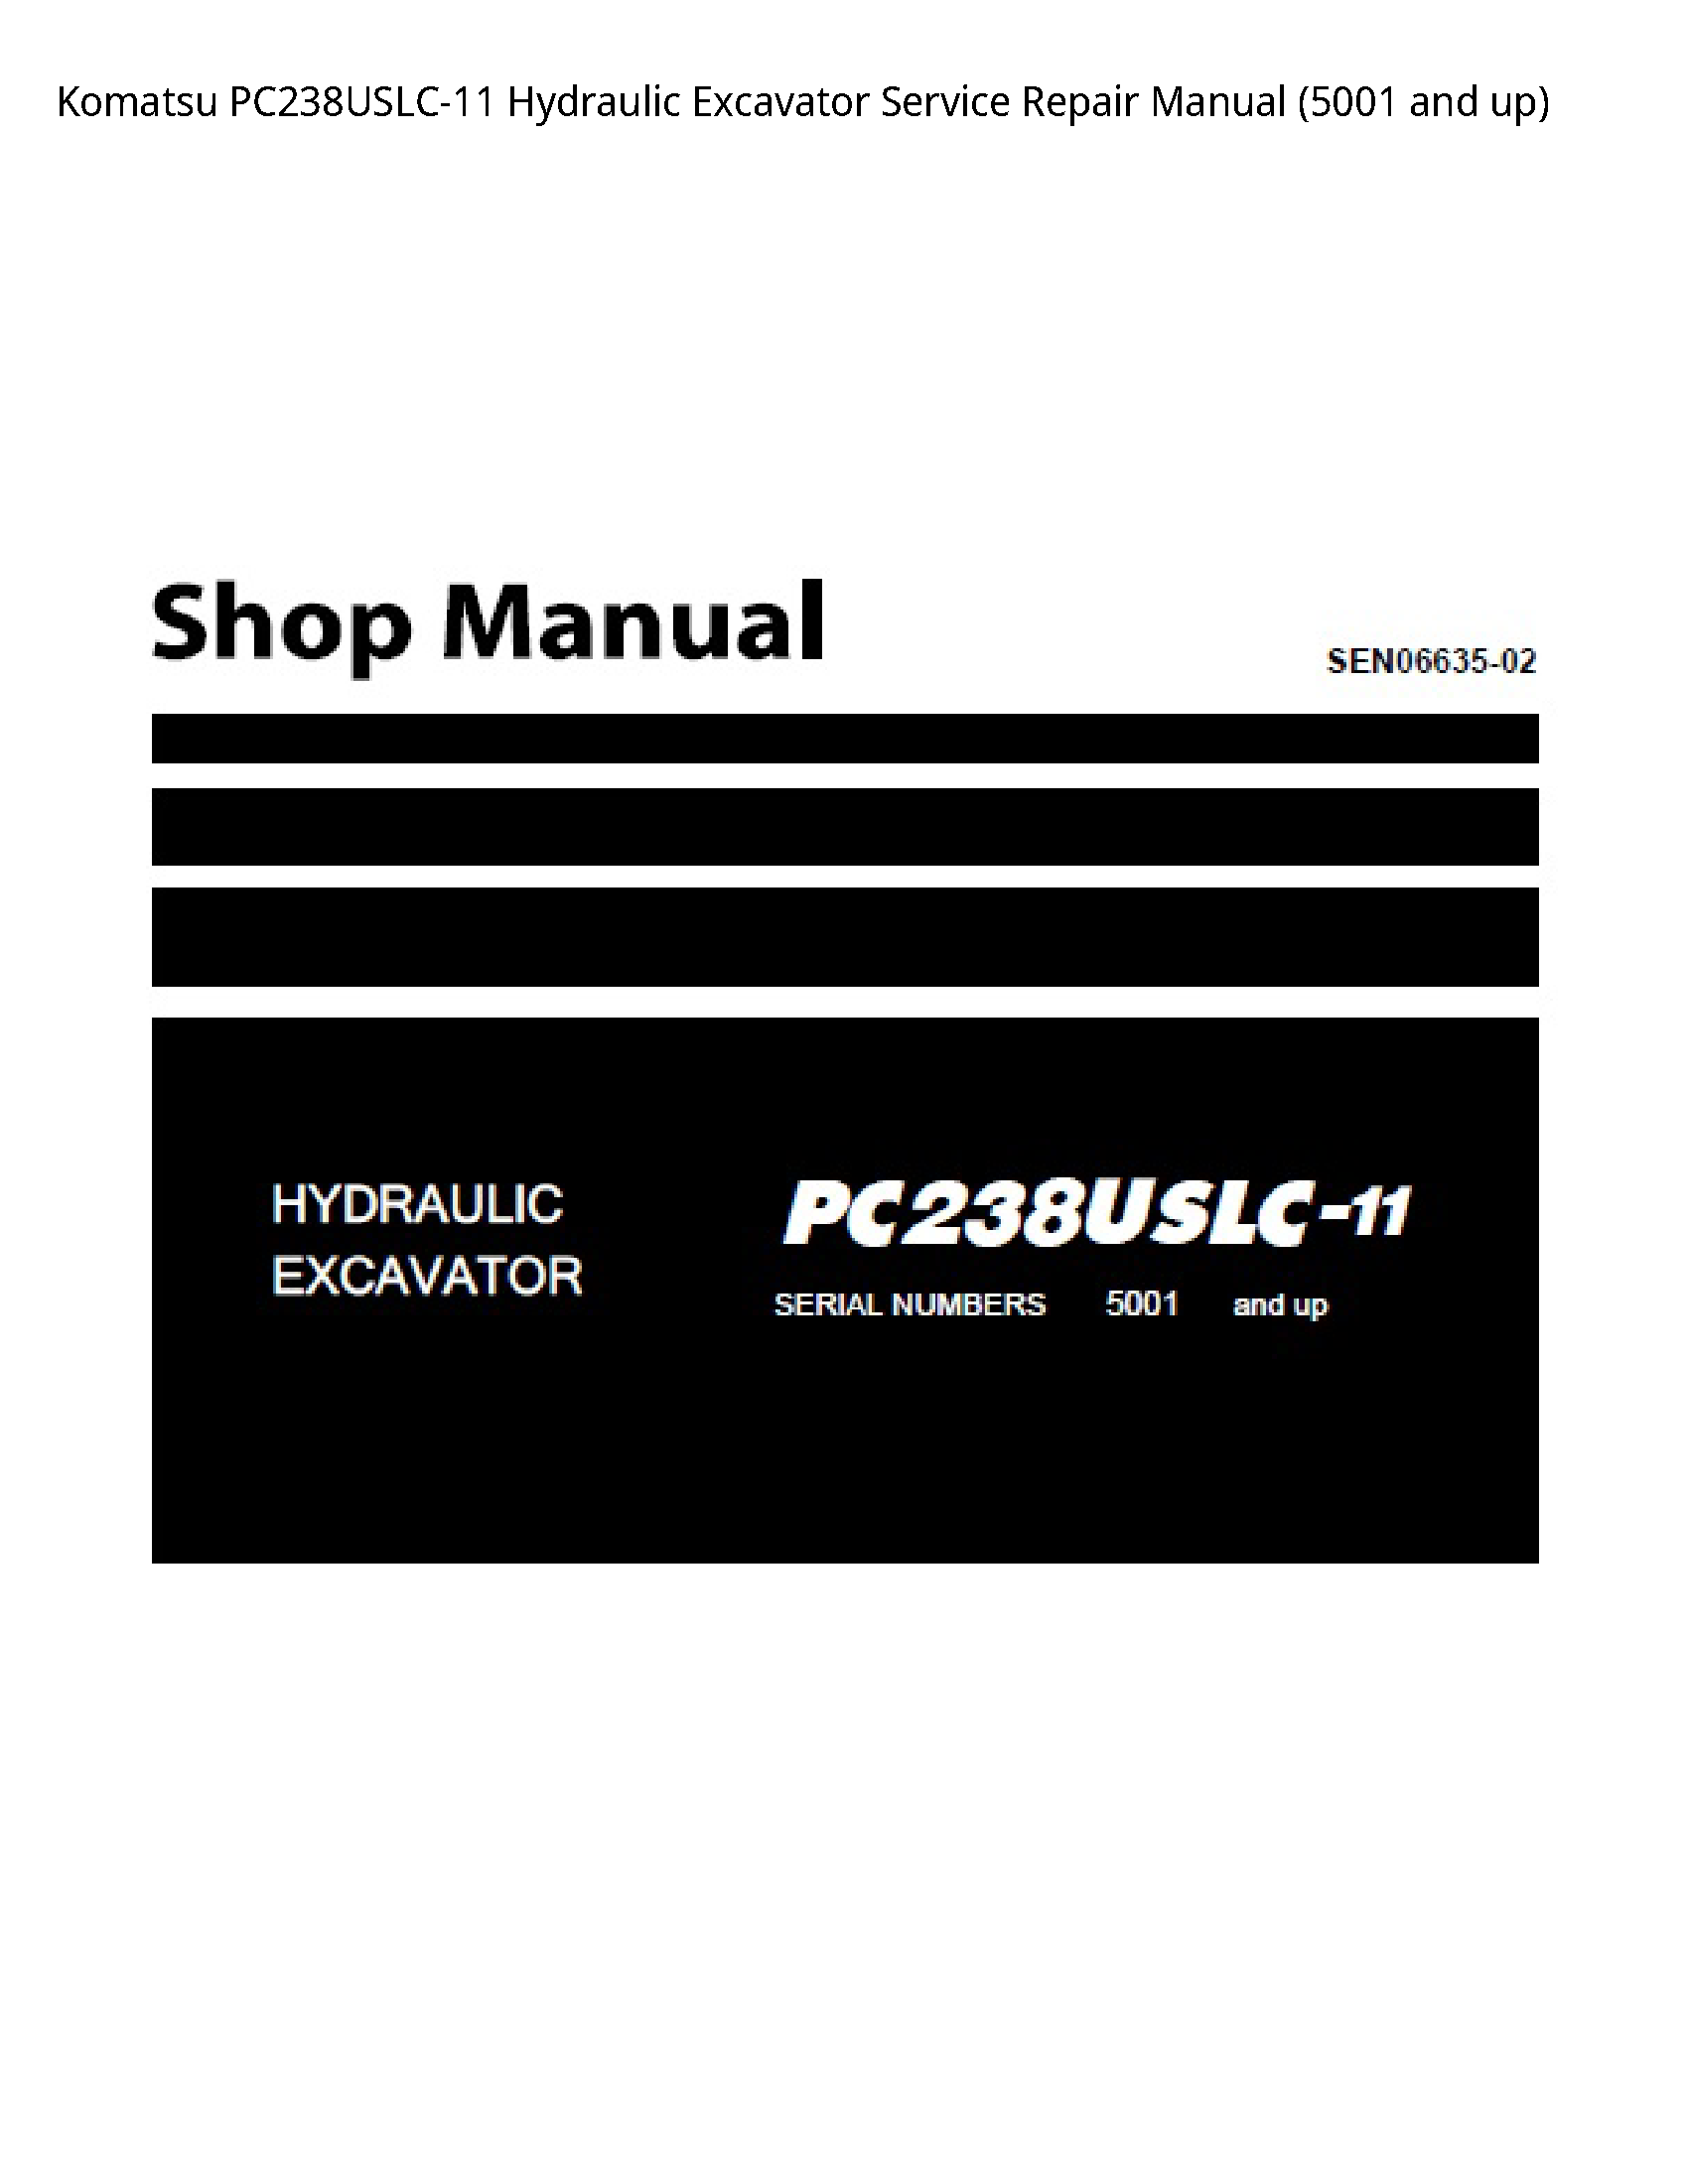 KOMATSU PC238USLC-11 Hydraulic Excavator manual